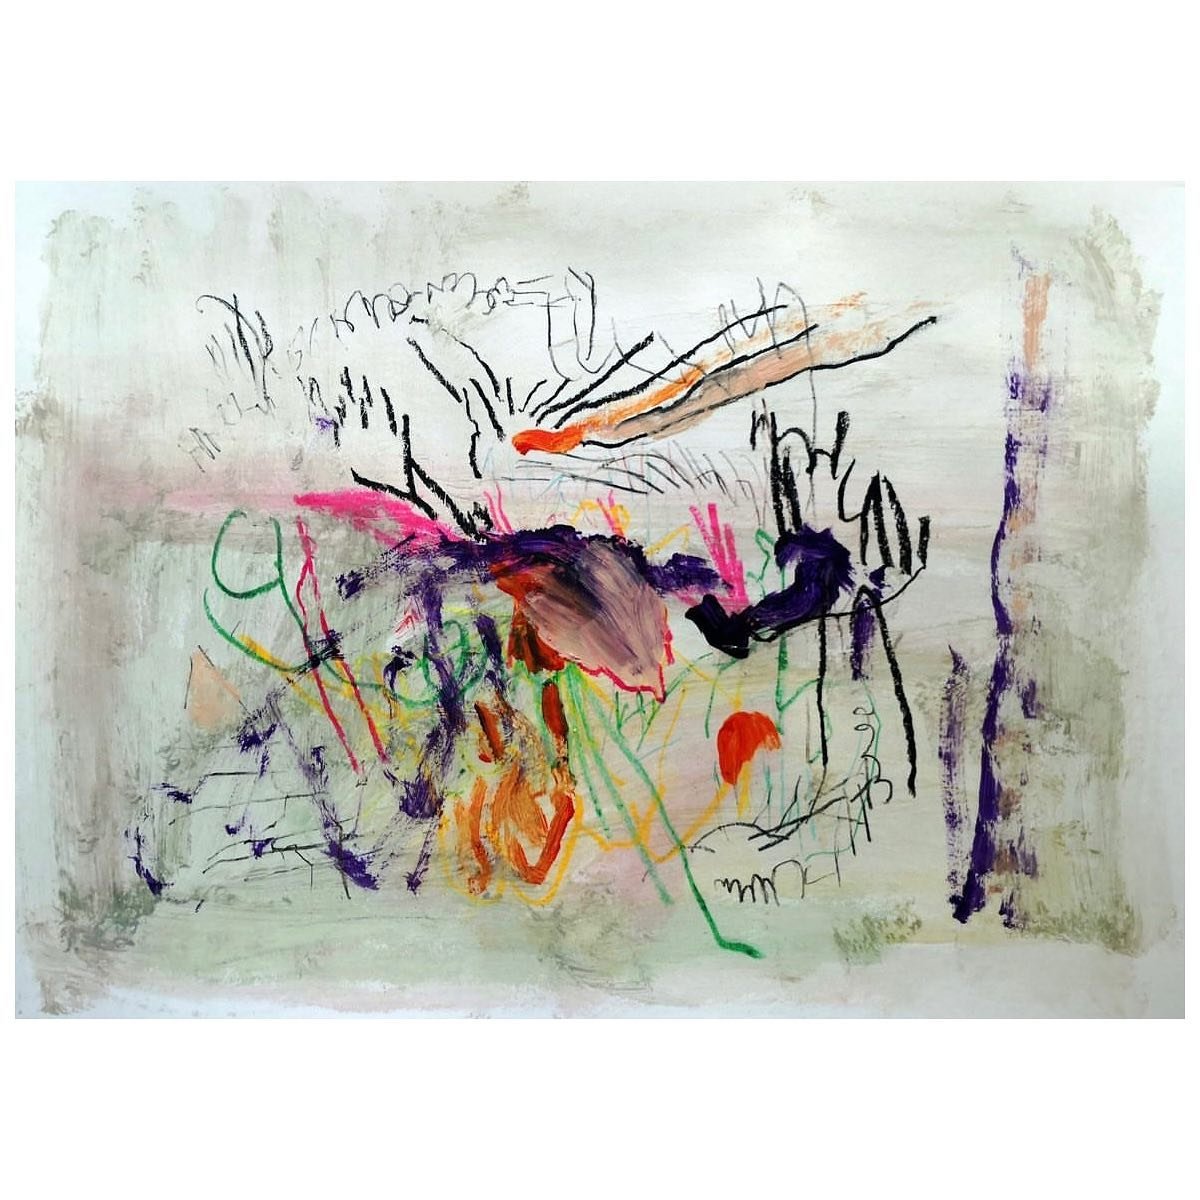 A2 by Joan Pa&ntilde;ell Fern&aacute;ndez de Liencre
@joanpanell_art. DM for feature.
.
.
.
.
.
.
.
.
.
.
.
.
.
.
.
.
.
#painters #paint #art #arts #paintings
#contemporaryart
#contemporarypainting #painting #abstraction
#scribble #scribbles #scribbl